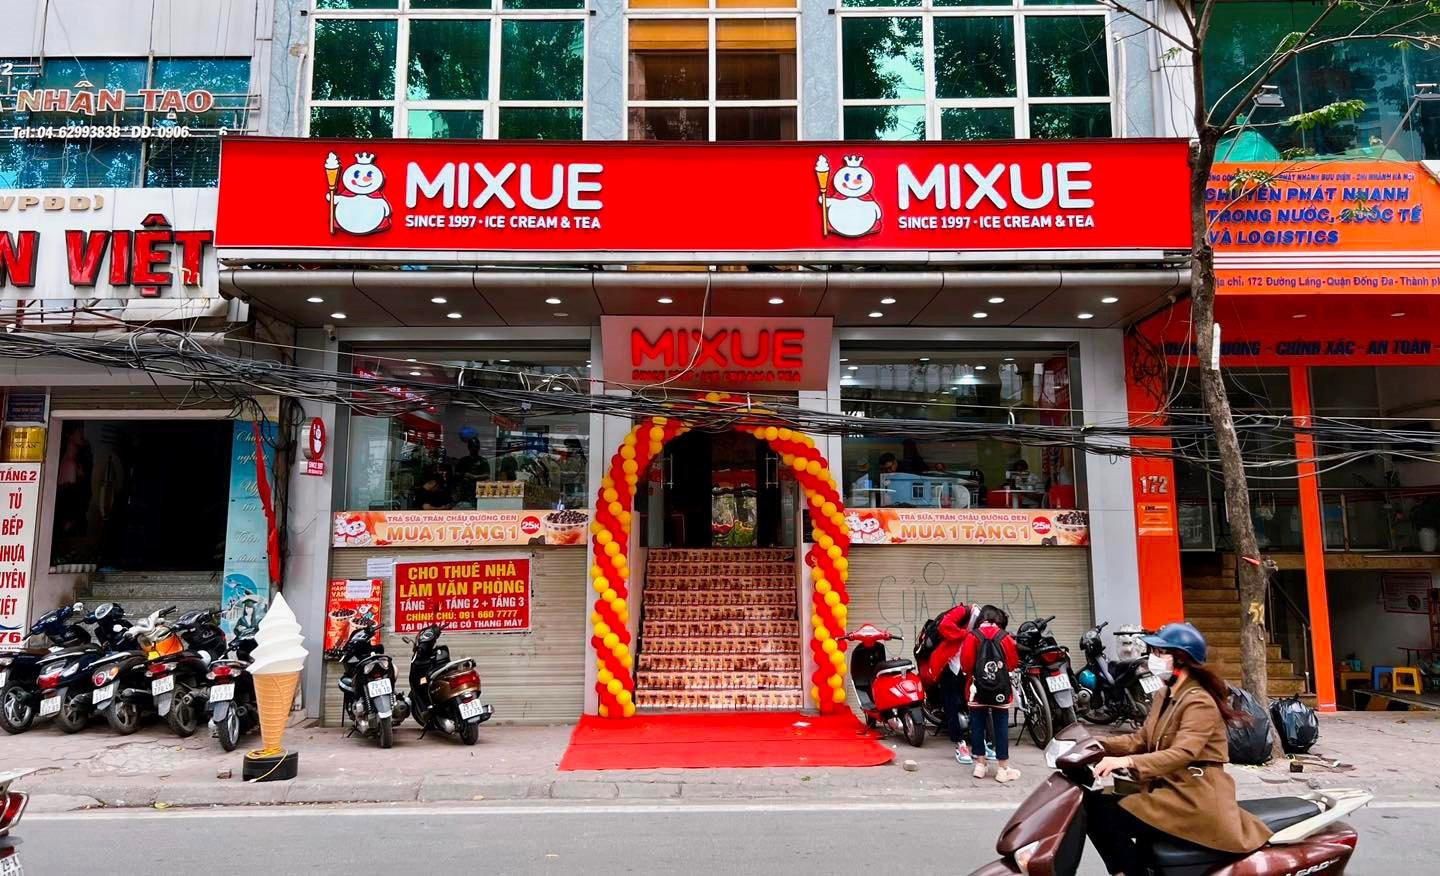 Kem 10.000 đồng, đồ uống giảm giá tới 30%, đâu là công thức nhân bản 1.300 cửa hàng của Mixue tại Việt Nam? - Ảnh 1.